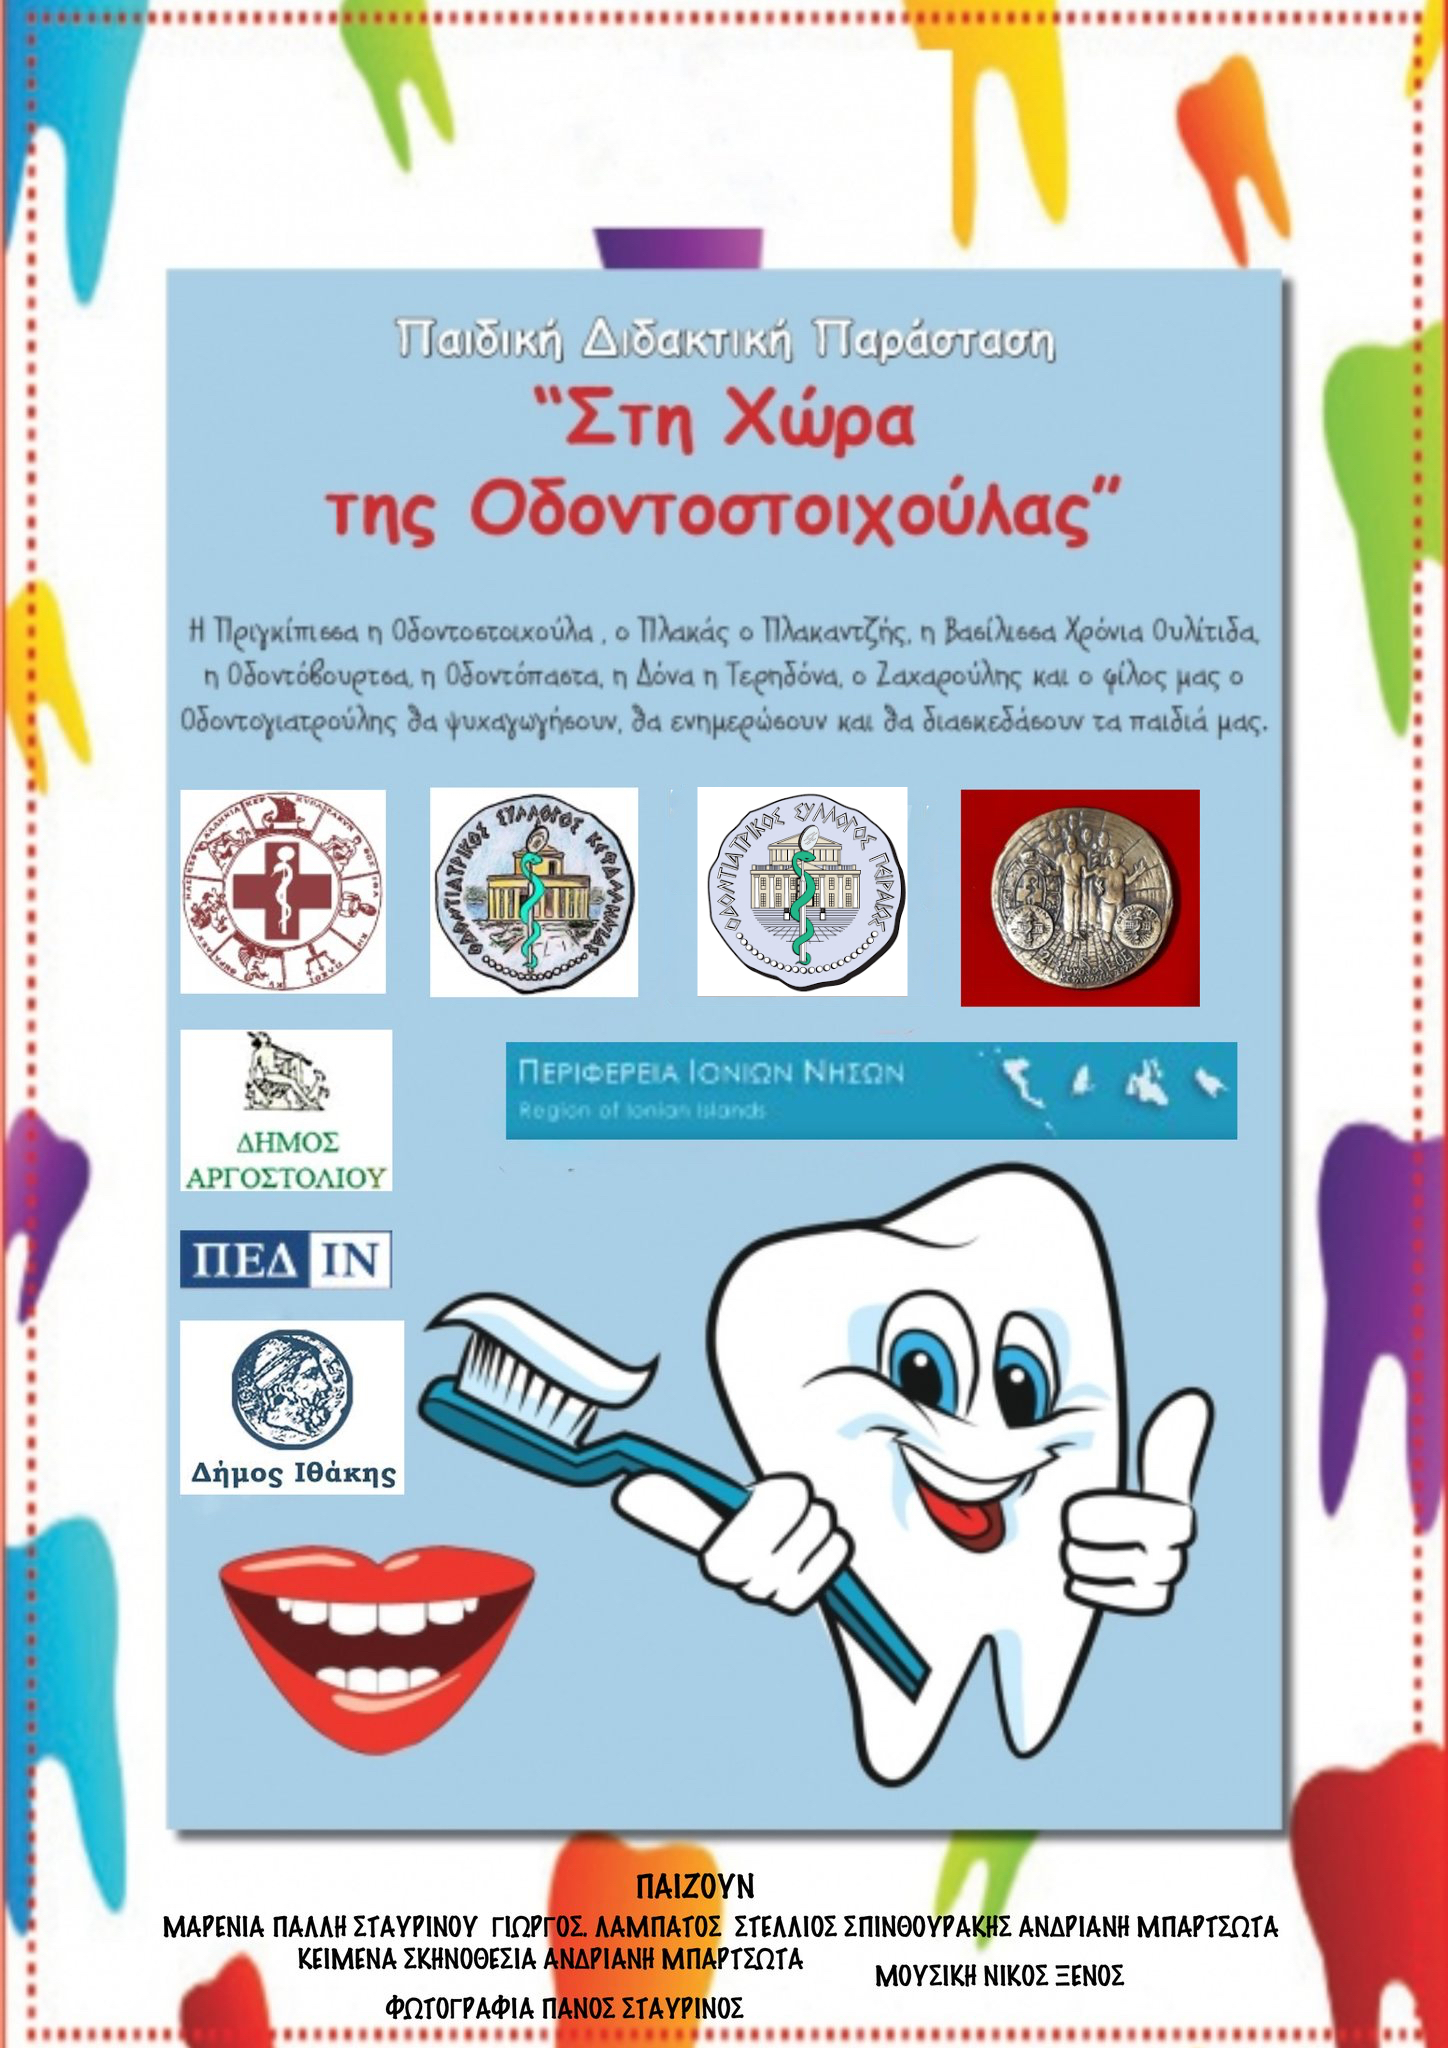 Αφίσα Οδοντοστοιχούλα